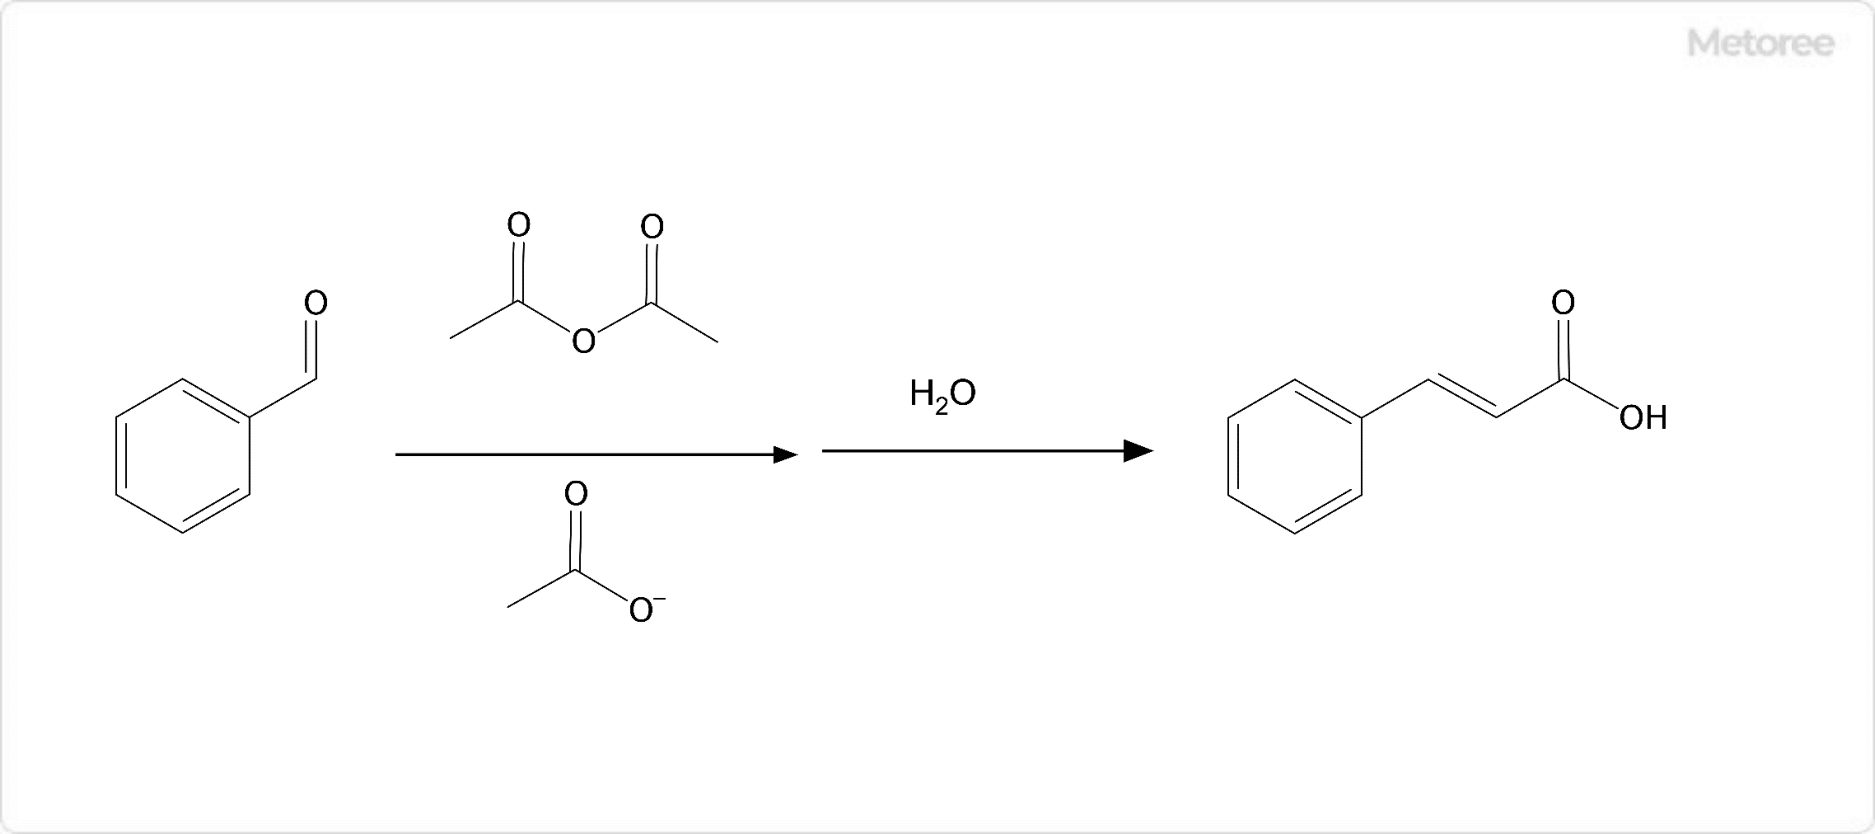 ケイ皮酸の合成 (パーキン反応)